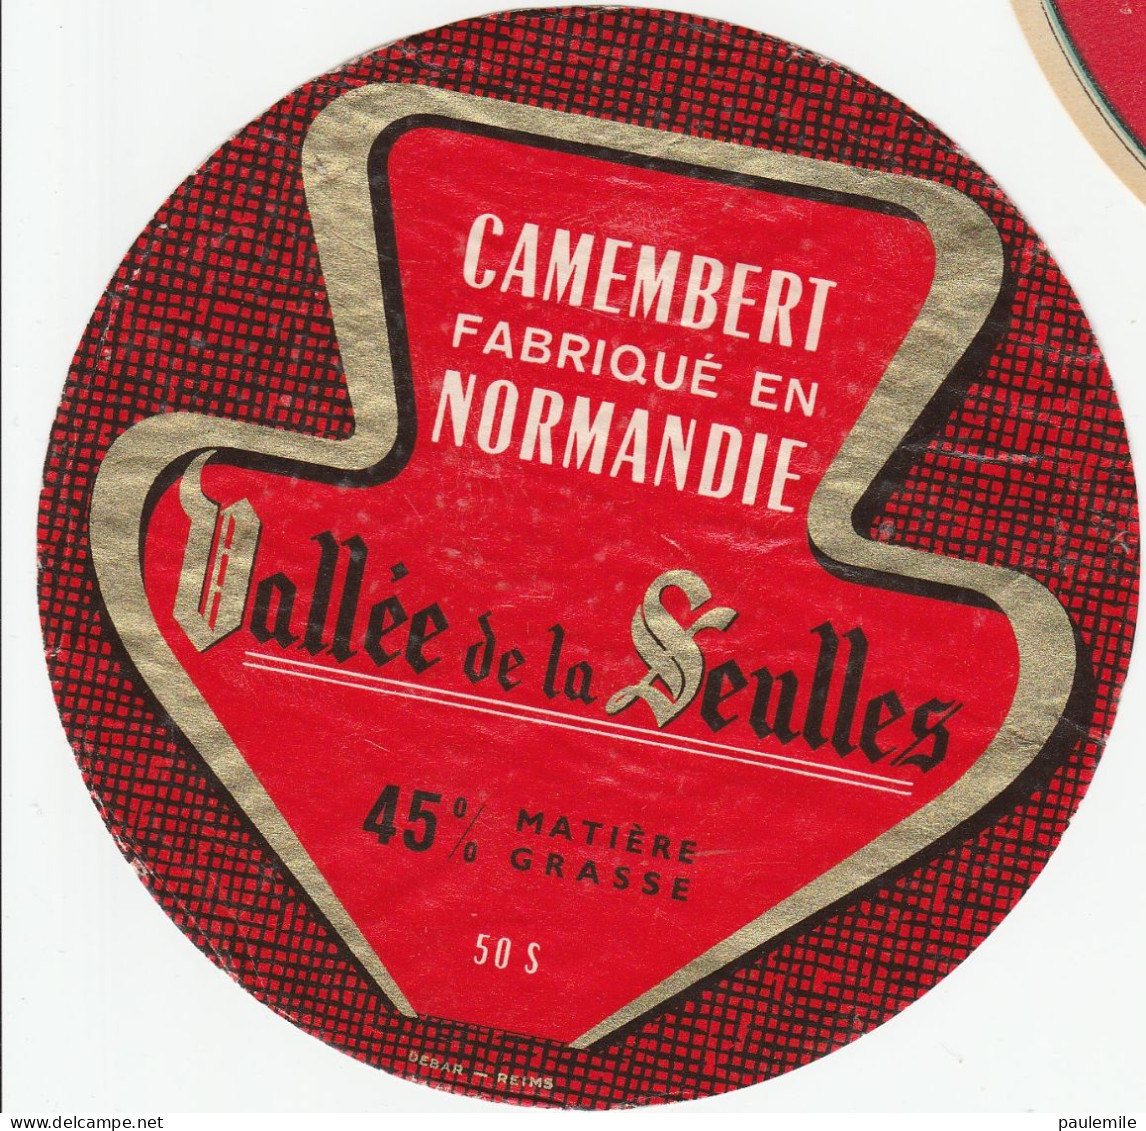 1 ETIQUETTE  CAMEMBERT DECOLLEE  VALLEE DE LA SEULLES 50 S - Käse